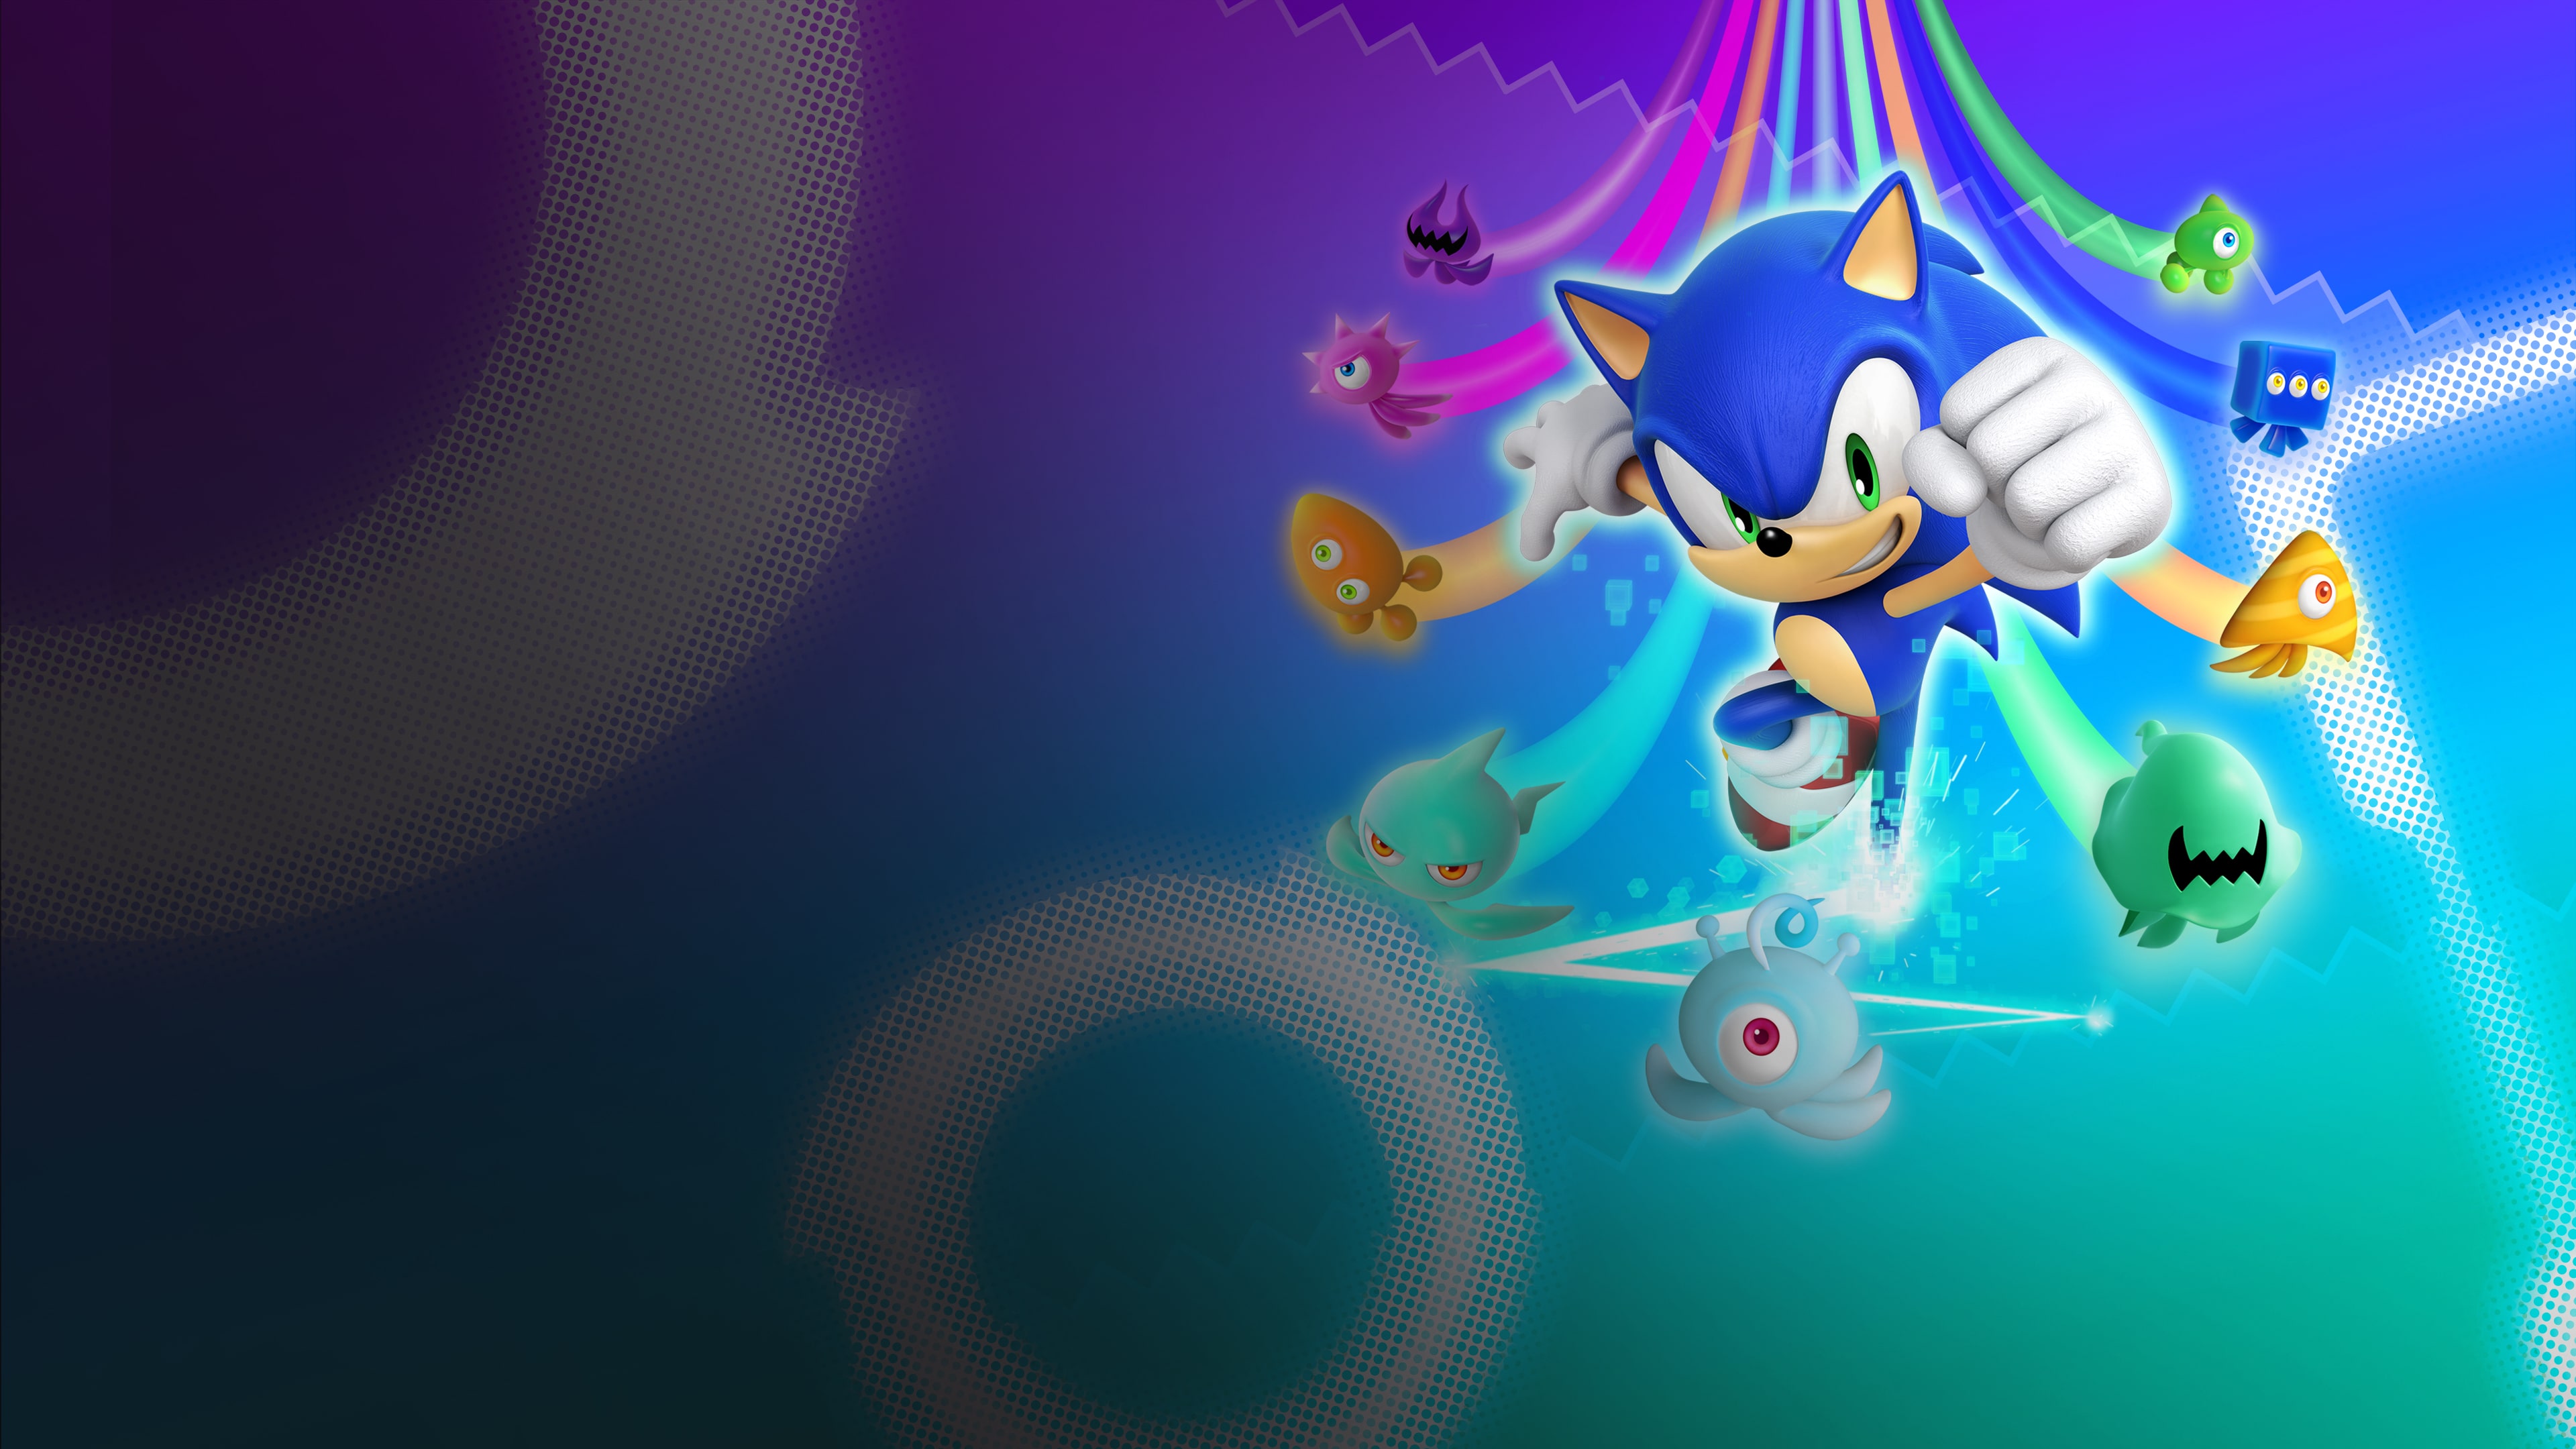 Jogo Sonic Colors Ultimate - PS4 em Promoção na Americanas